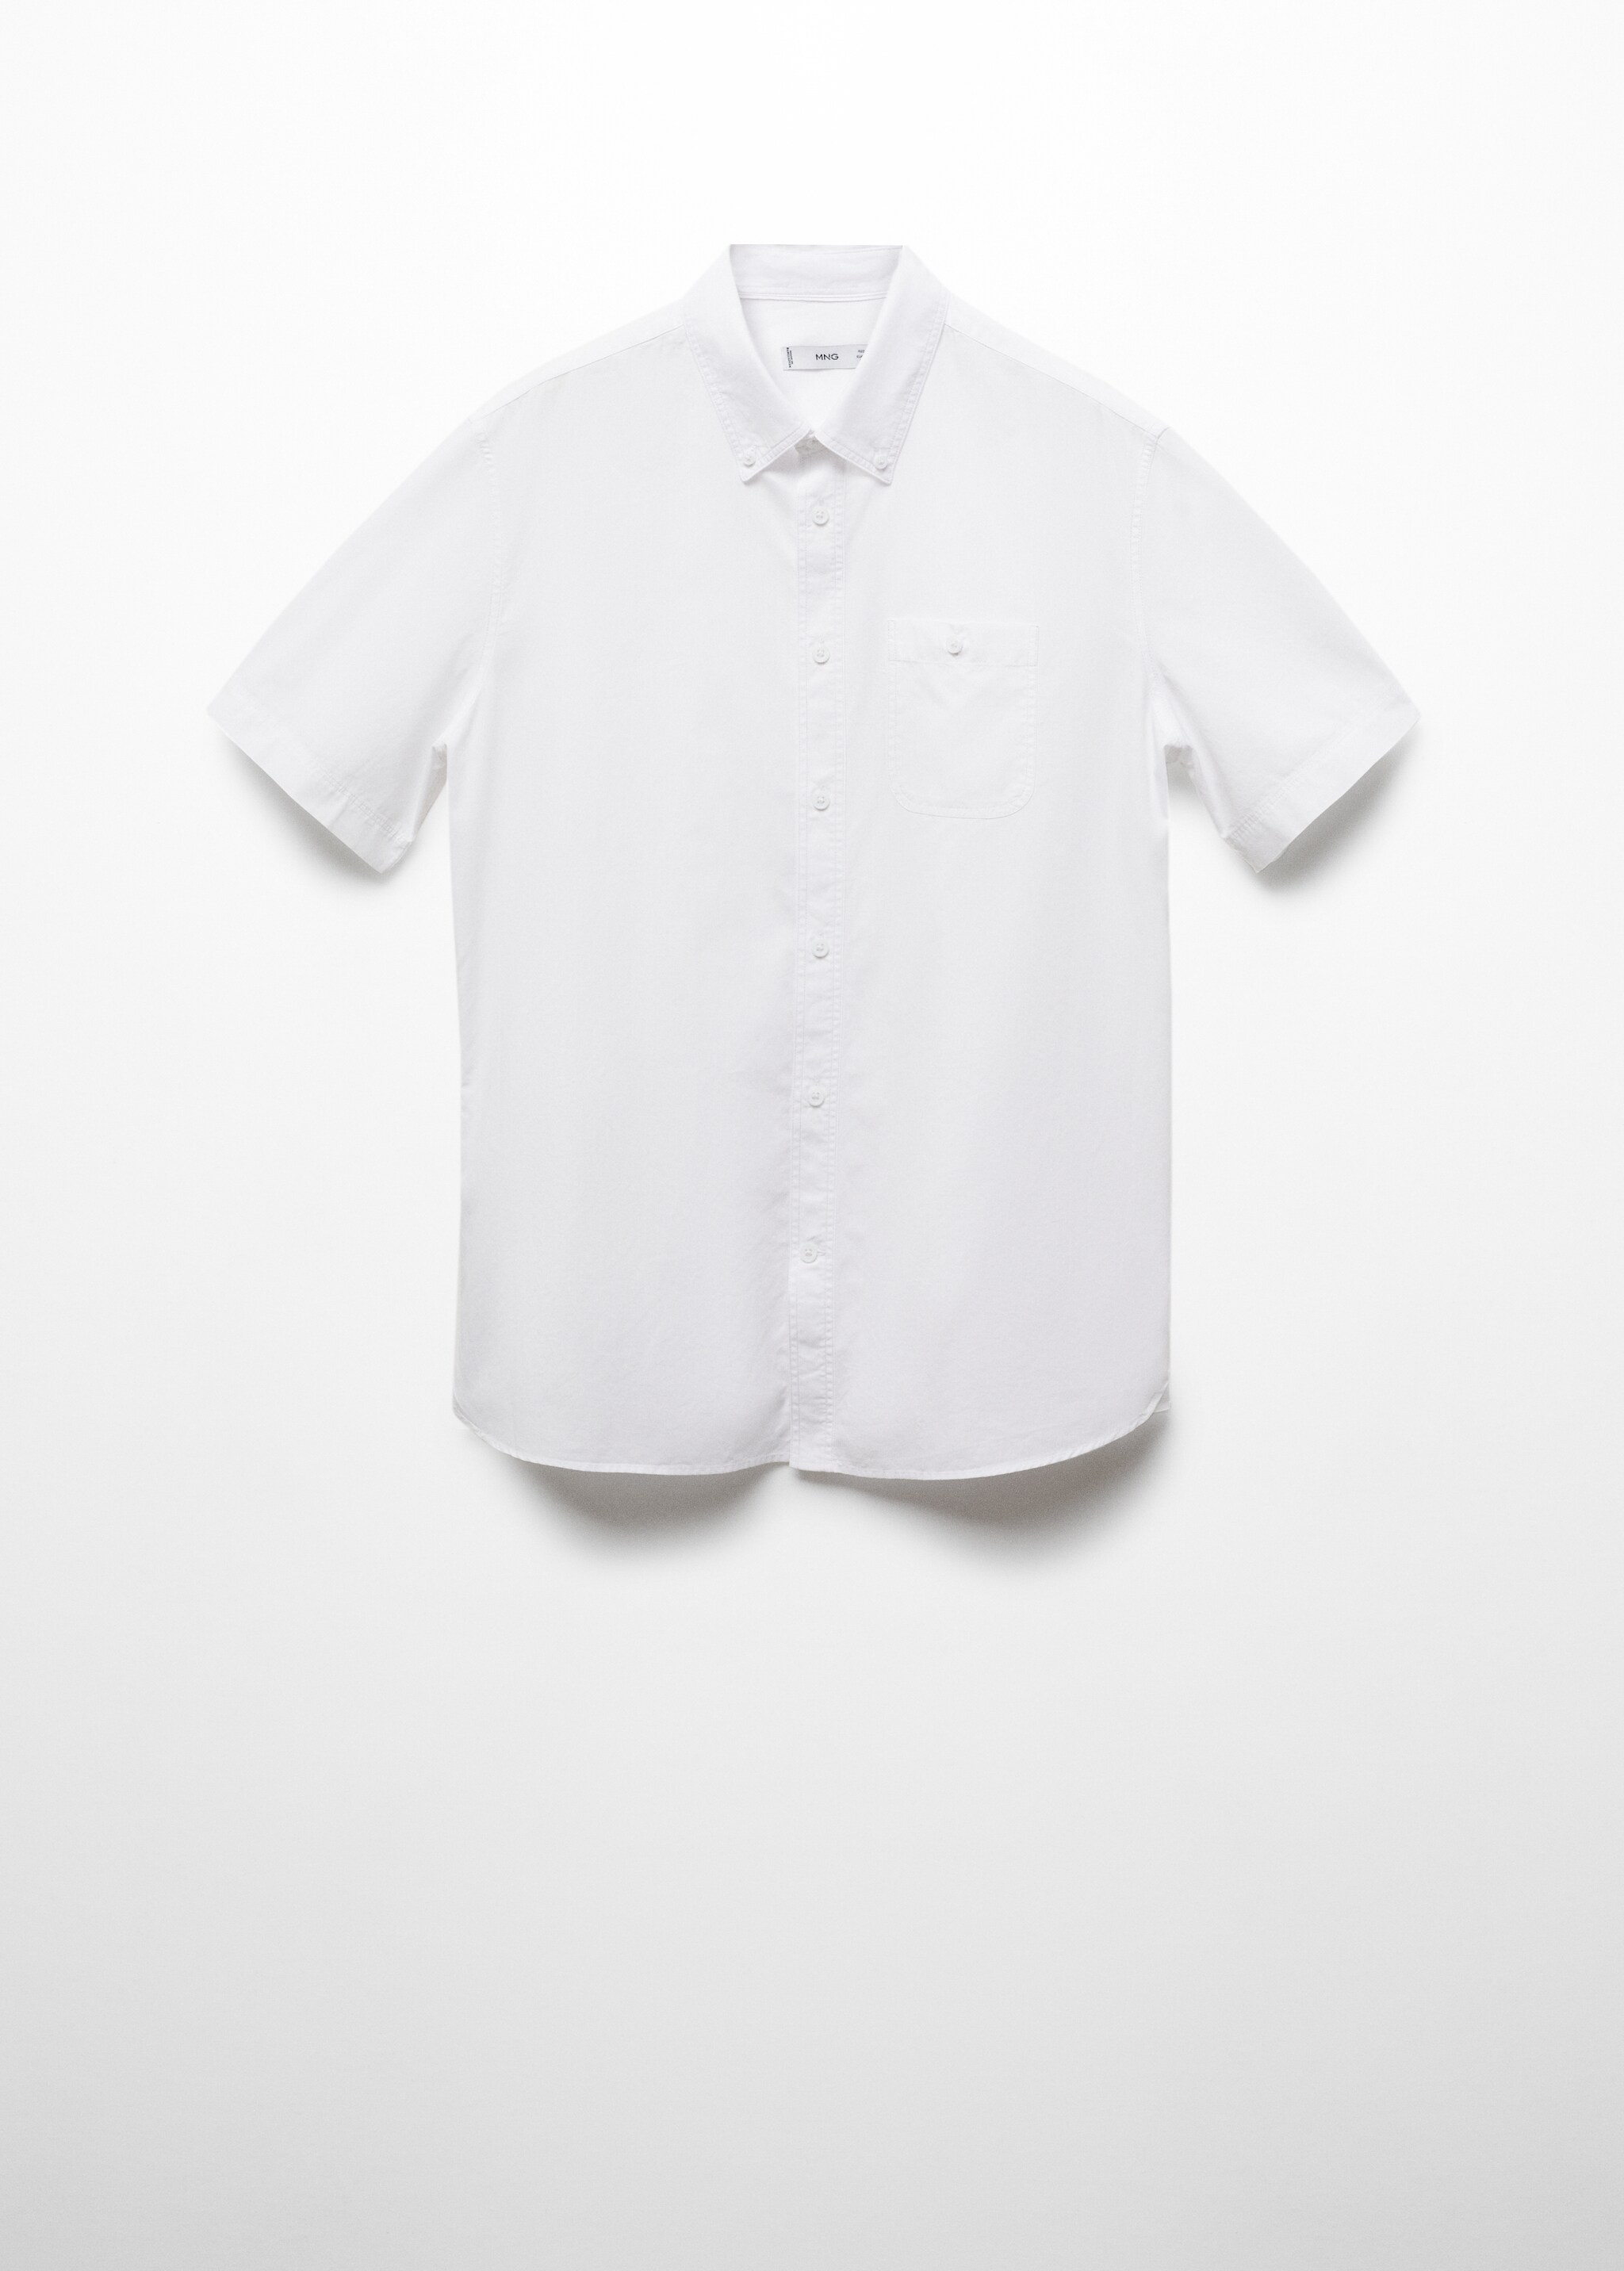 Рубашка regular fit 100% хлопок - Изделие без модели